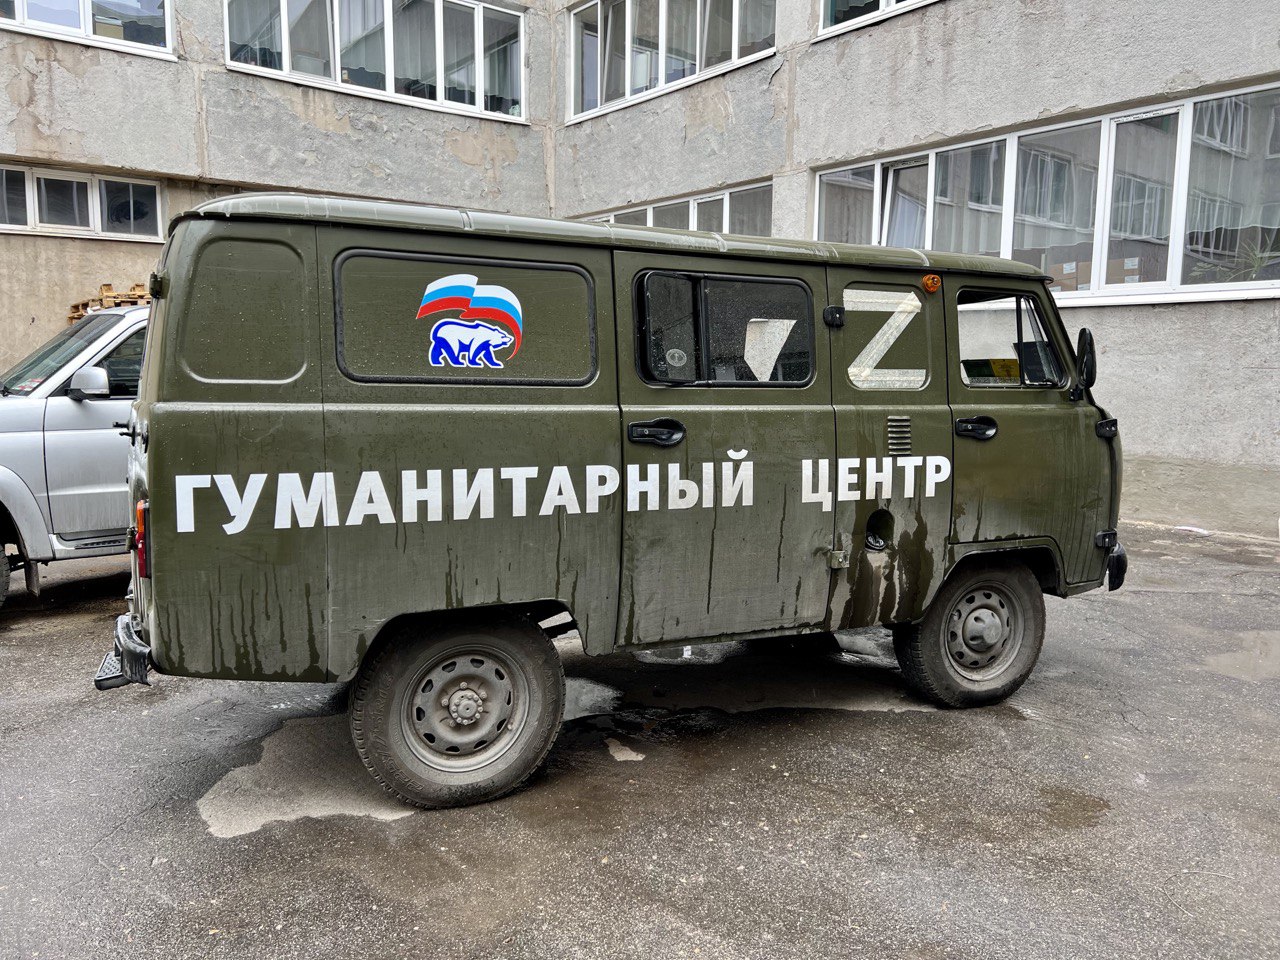 Автомобиль УАЗ с надписью "Гуманитарный центр"